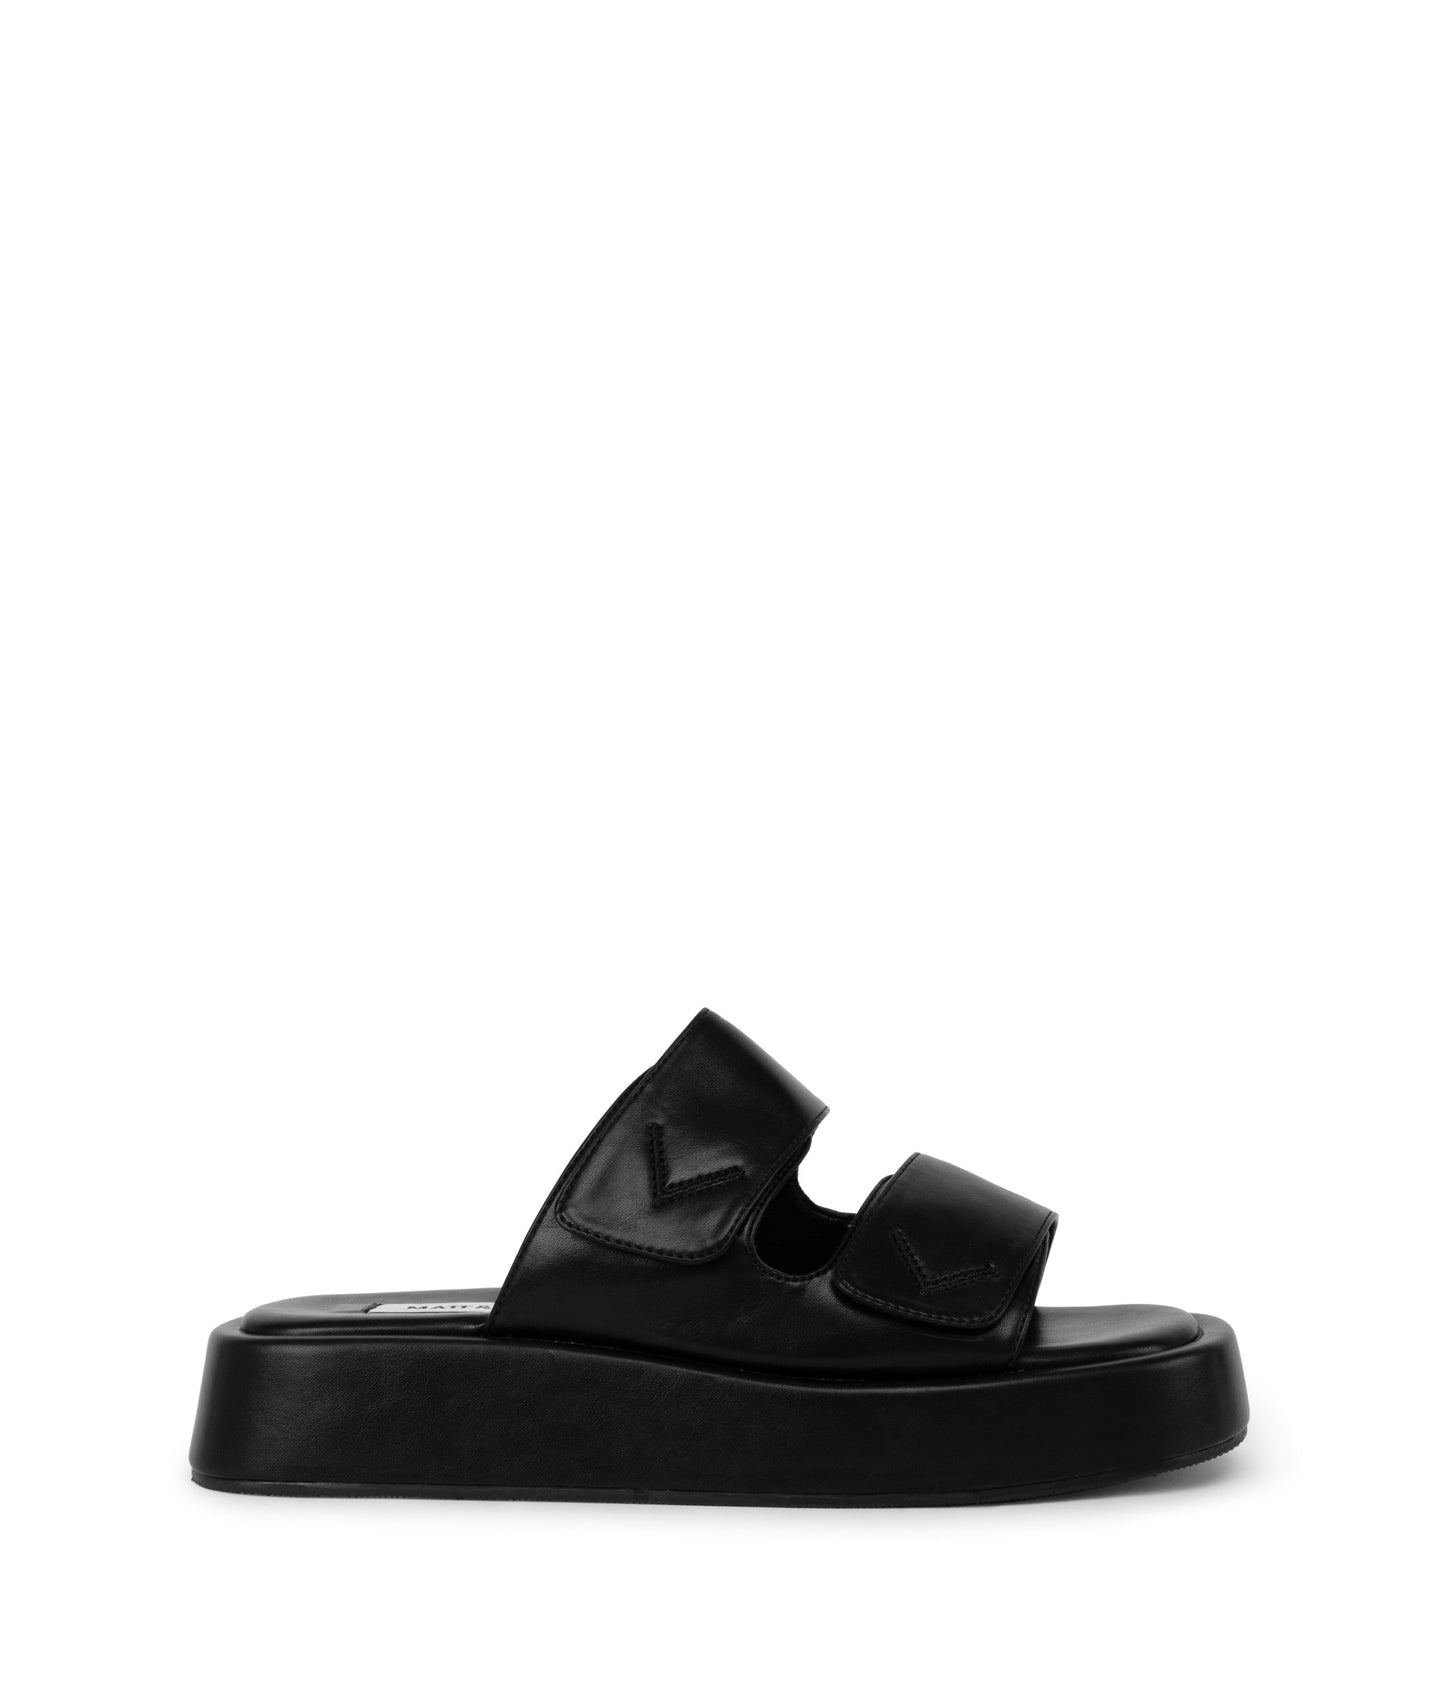 variant:: noir -- emie shoe noir